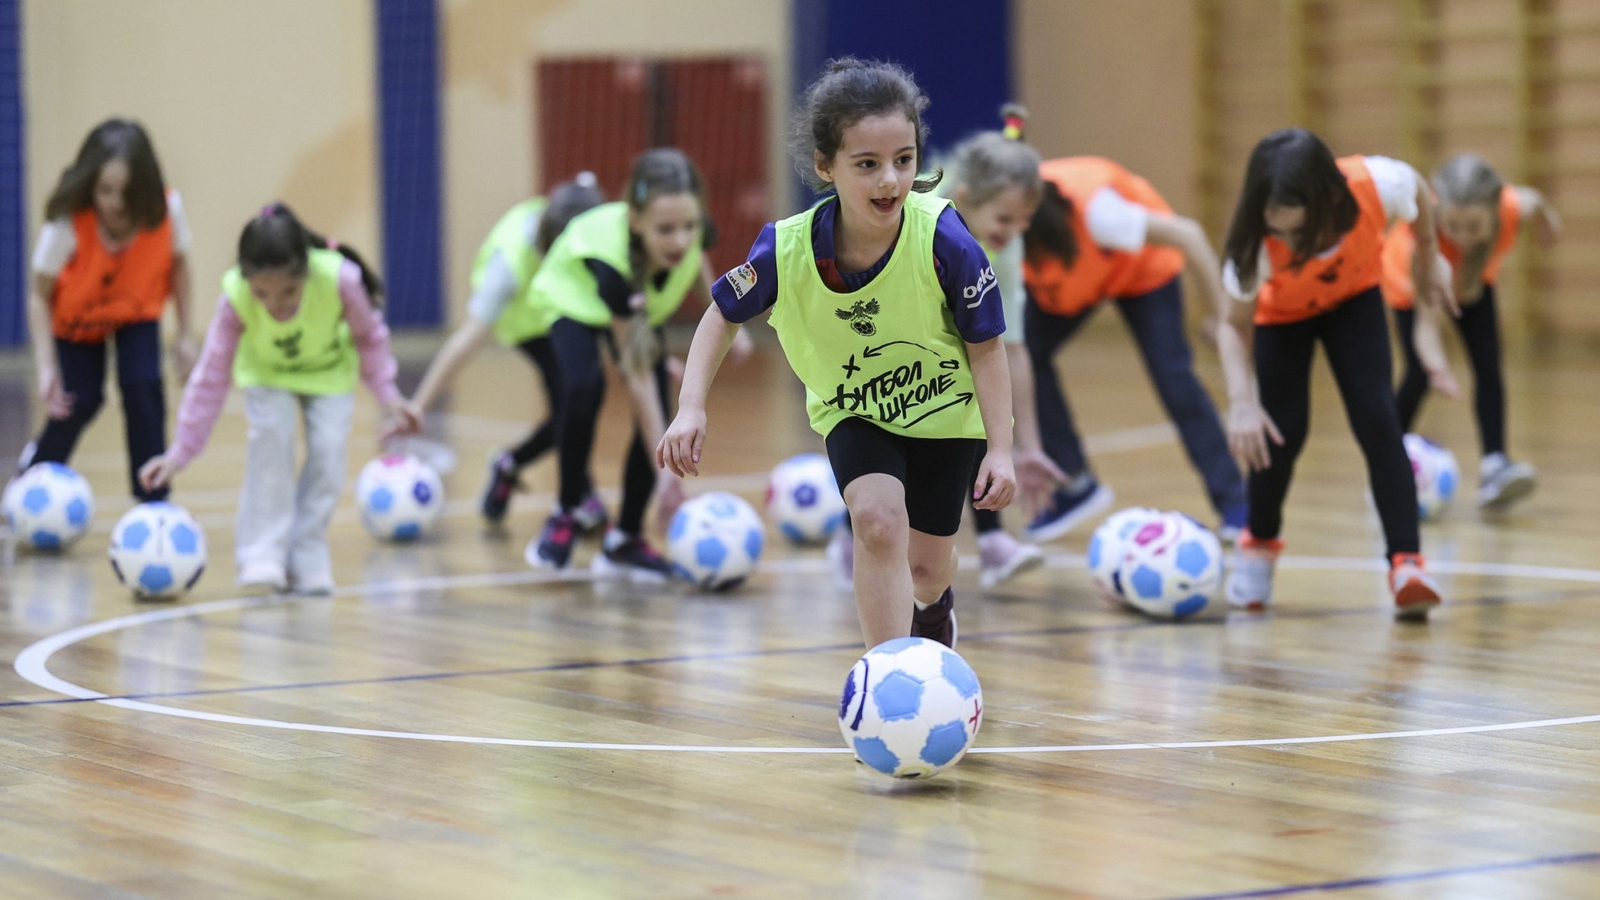 1,4 млн школьников в России играют в футбол на уроках физкультуры